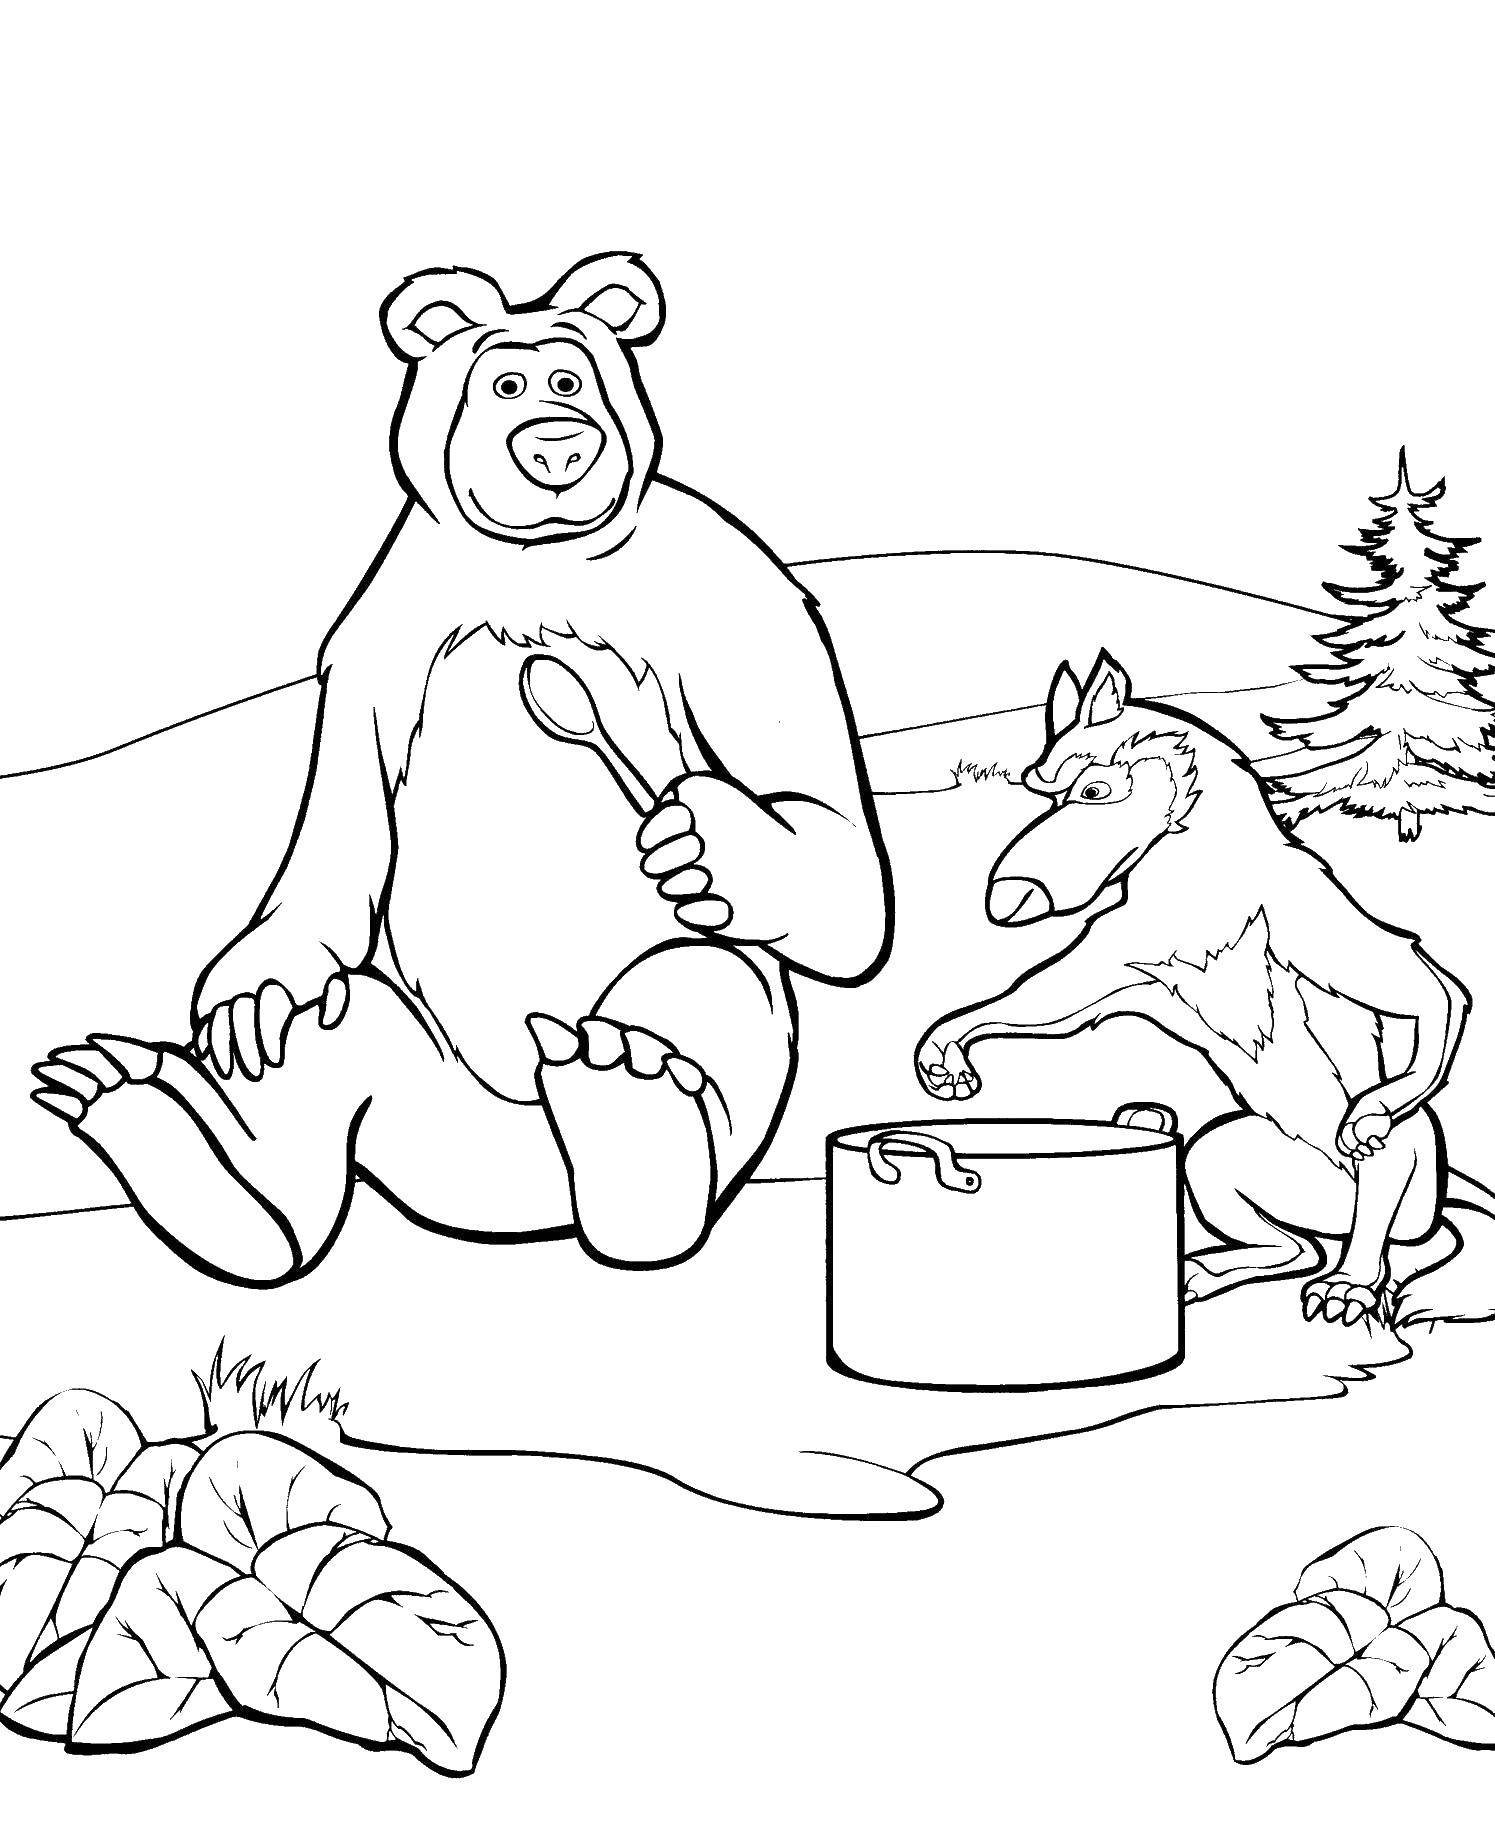 Раскраски для детей про озорную Машу из мультфильма Маша и медведь  Миша кушает с волком